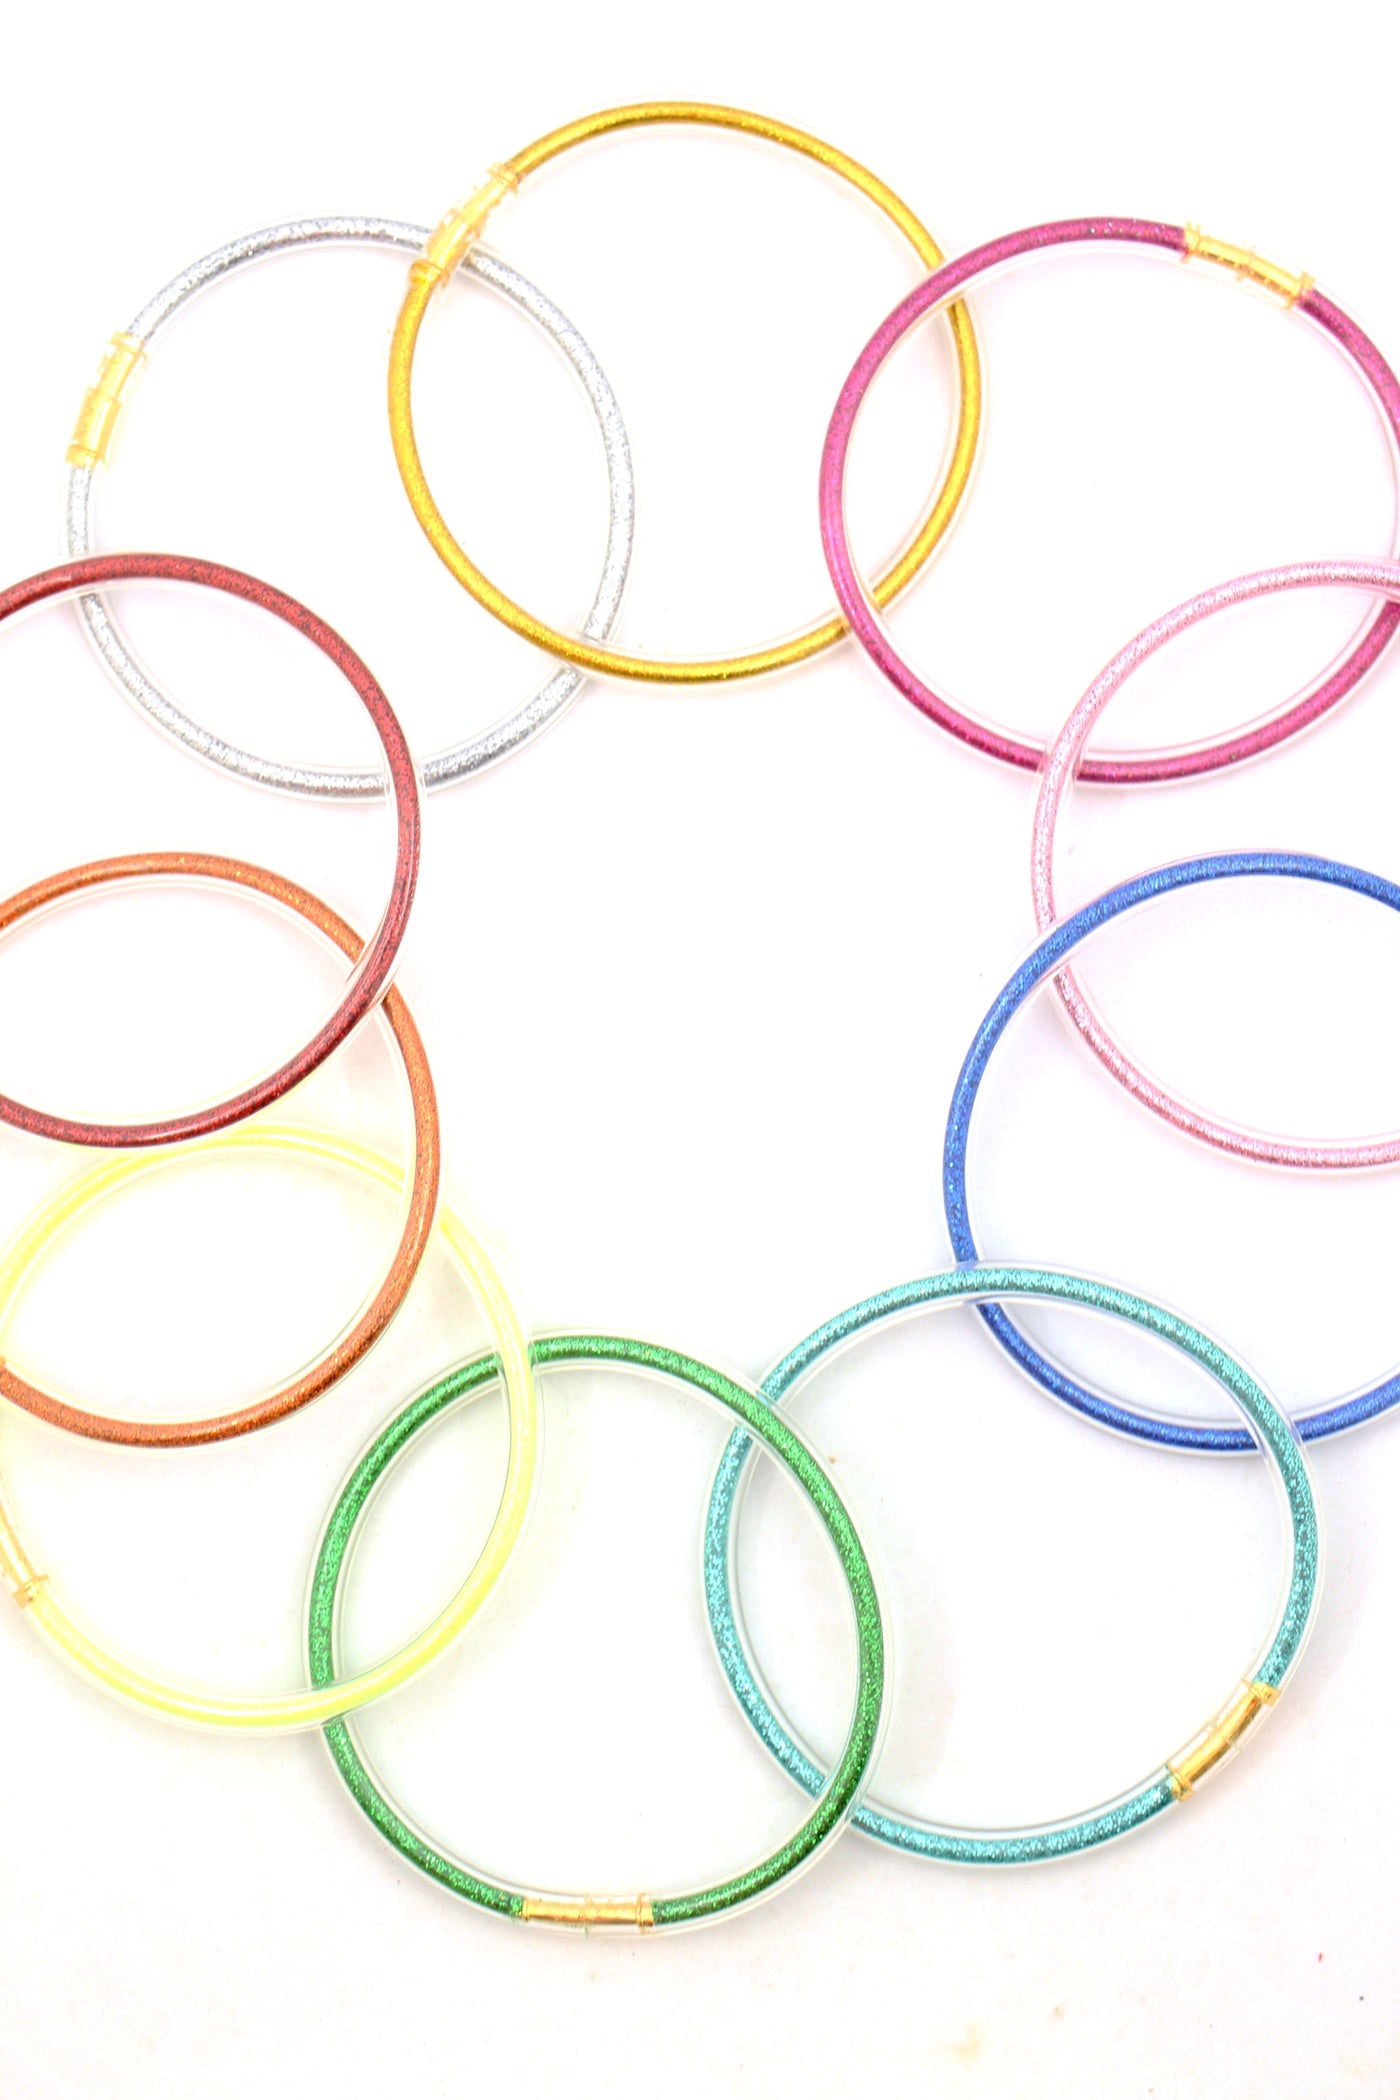 Waterproof rainbow bracelets for summer